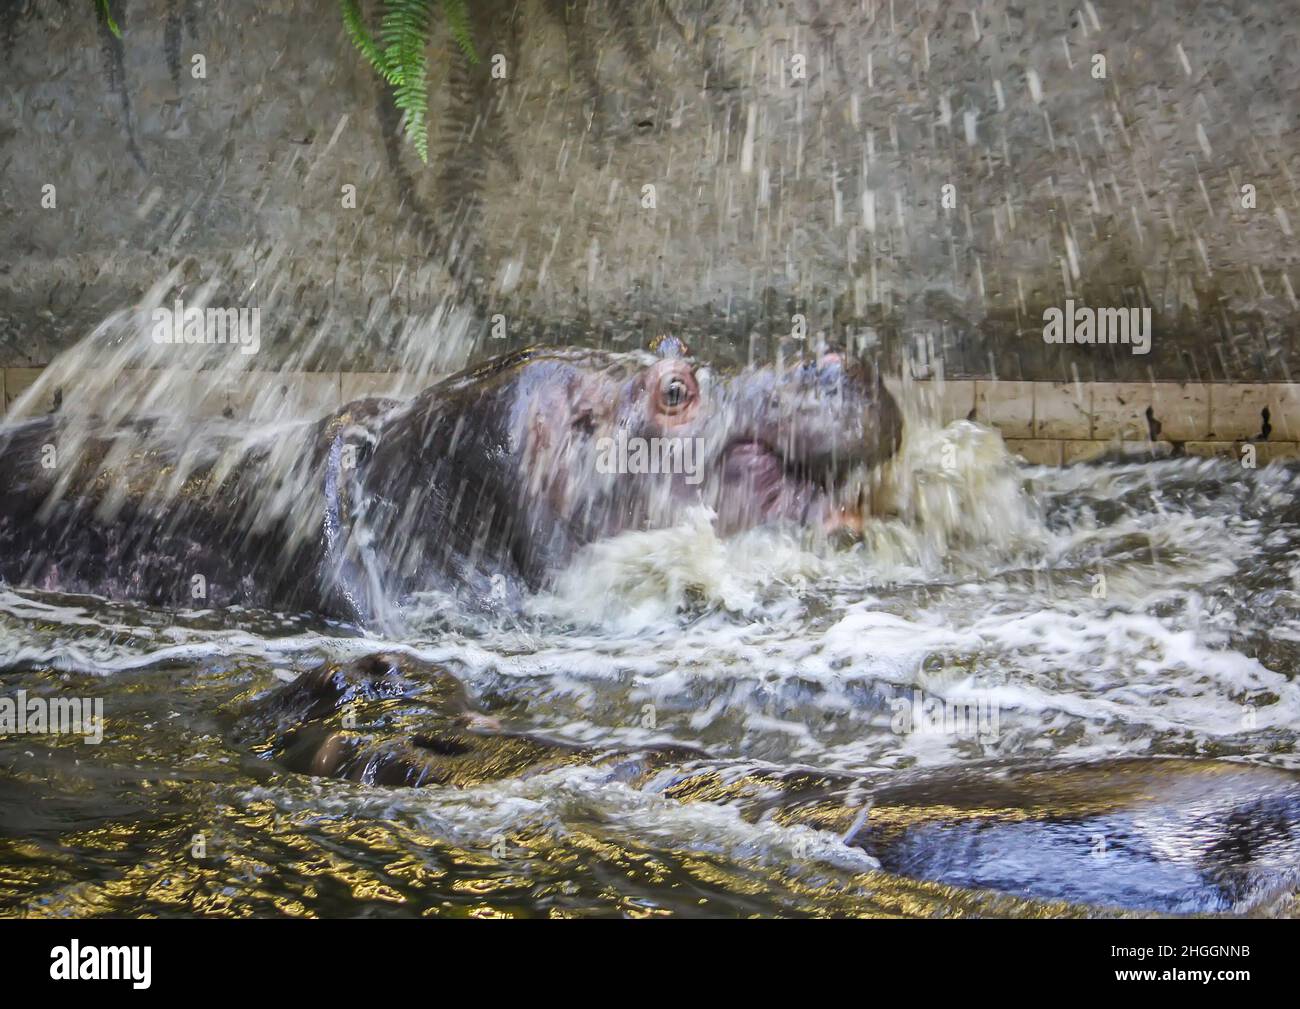 Deux hippopotames de combat dans l'eau.Hippopotame amphibius animal sauvage vivant en Afrique du Sud. Banque D'Images